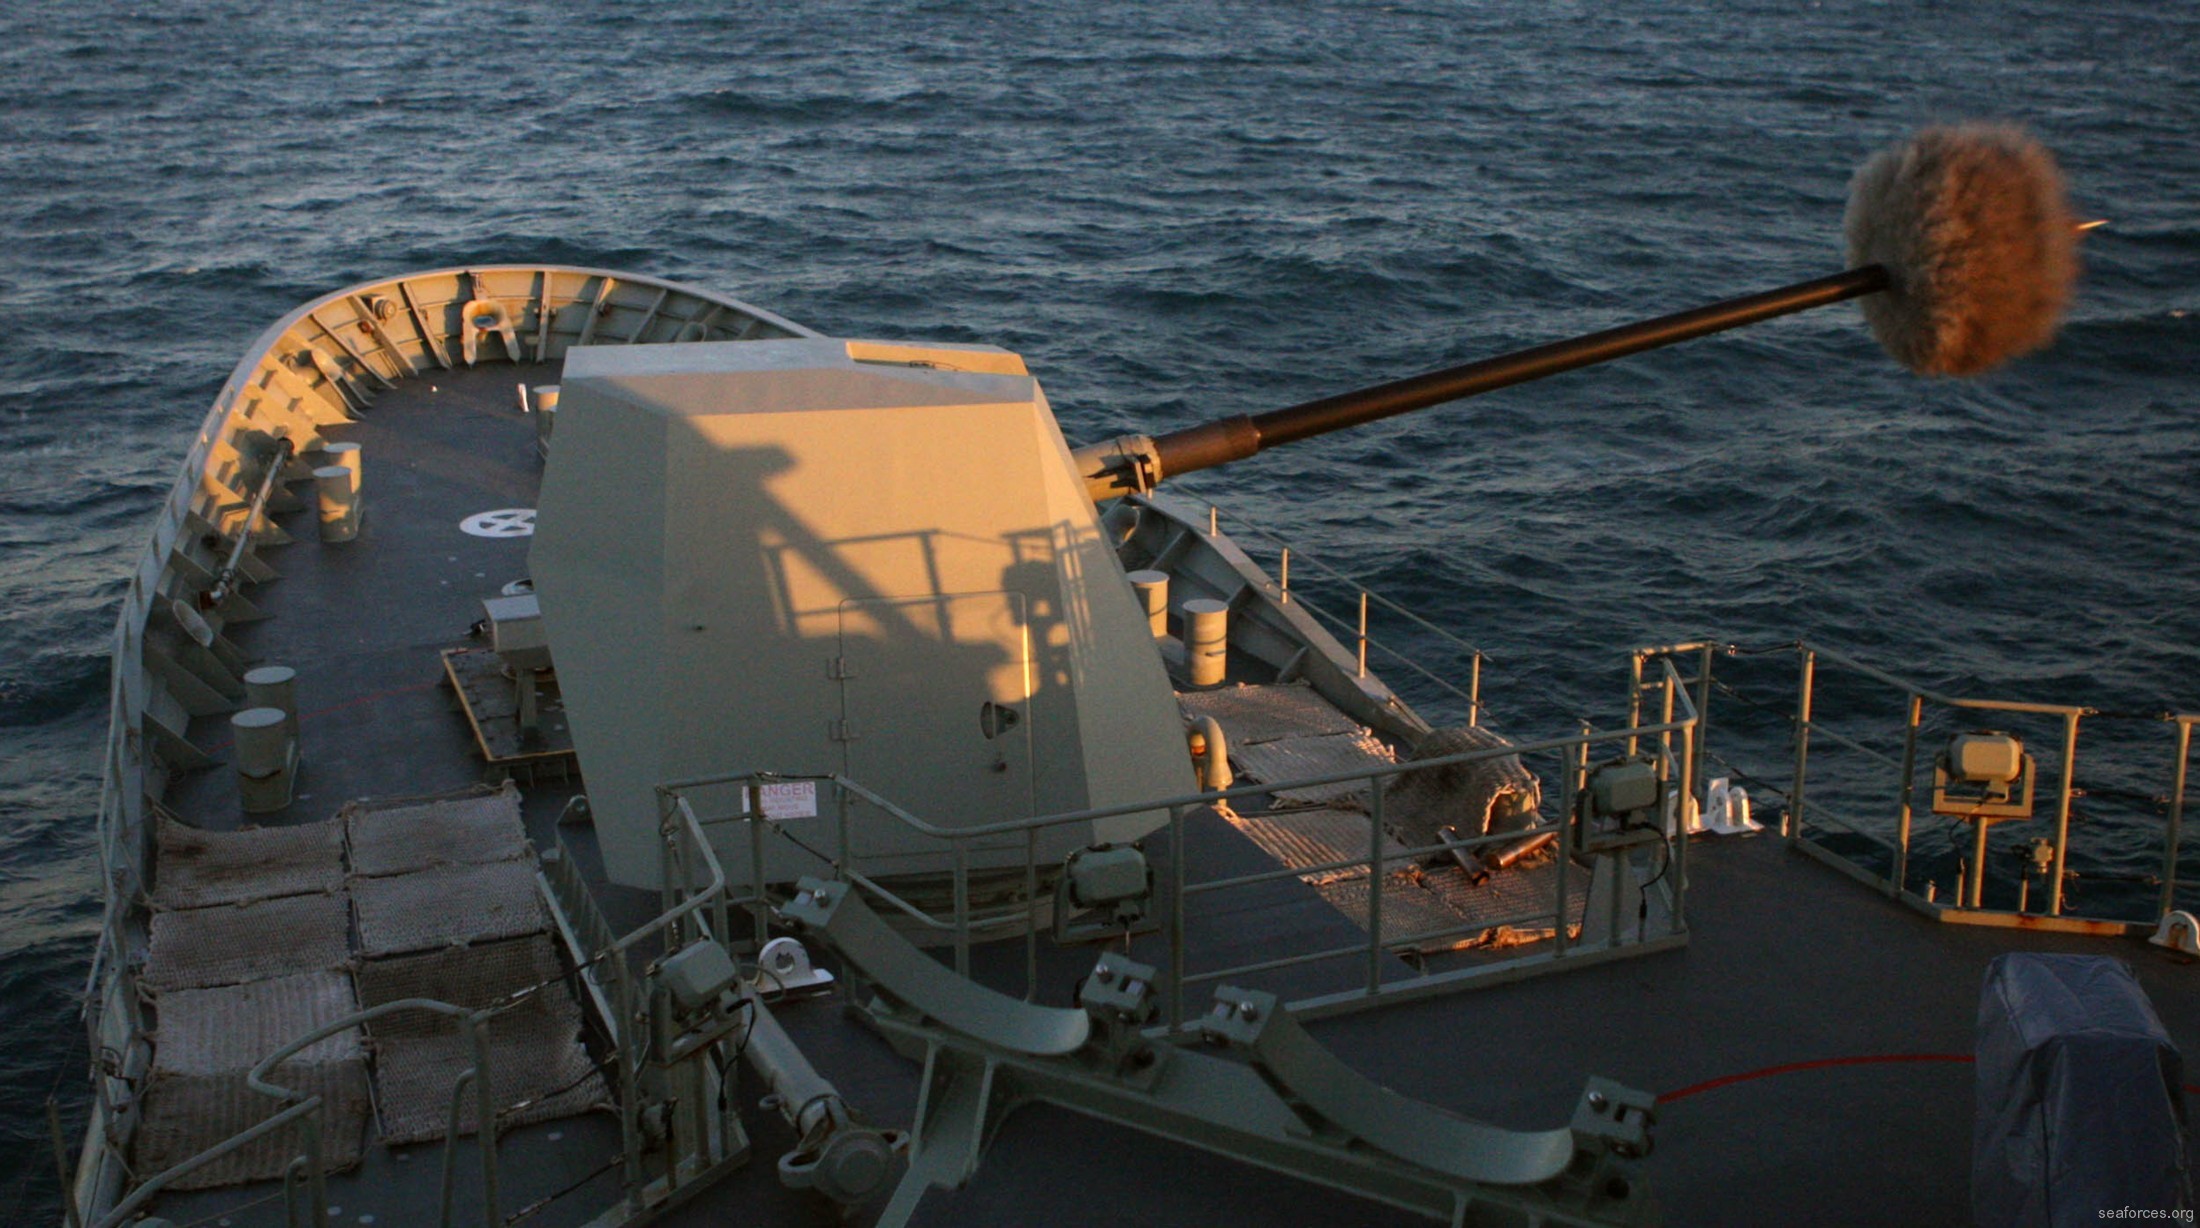 ffh-155 hms ballarat anzac class frigate royal australian navy 2011 38 mk-45 5" 54 caliber gun fire